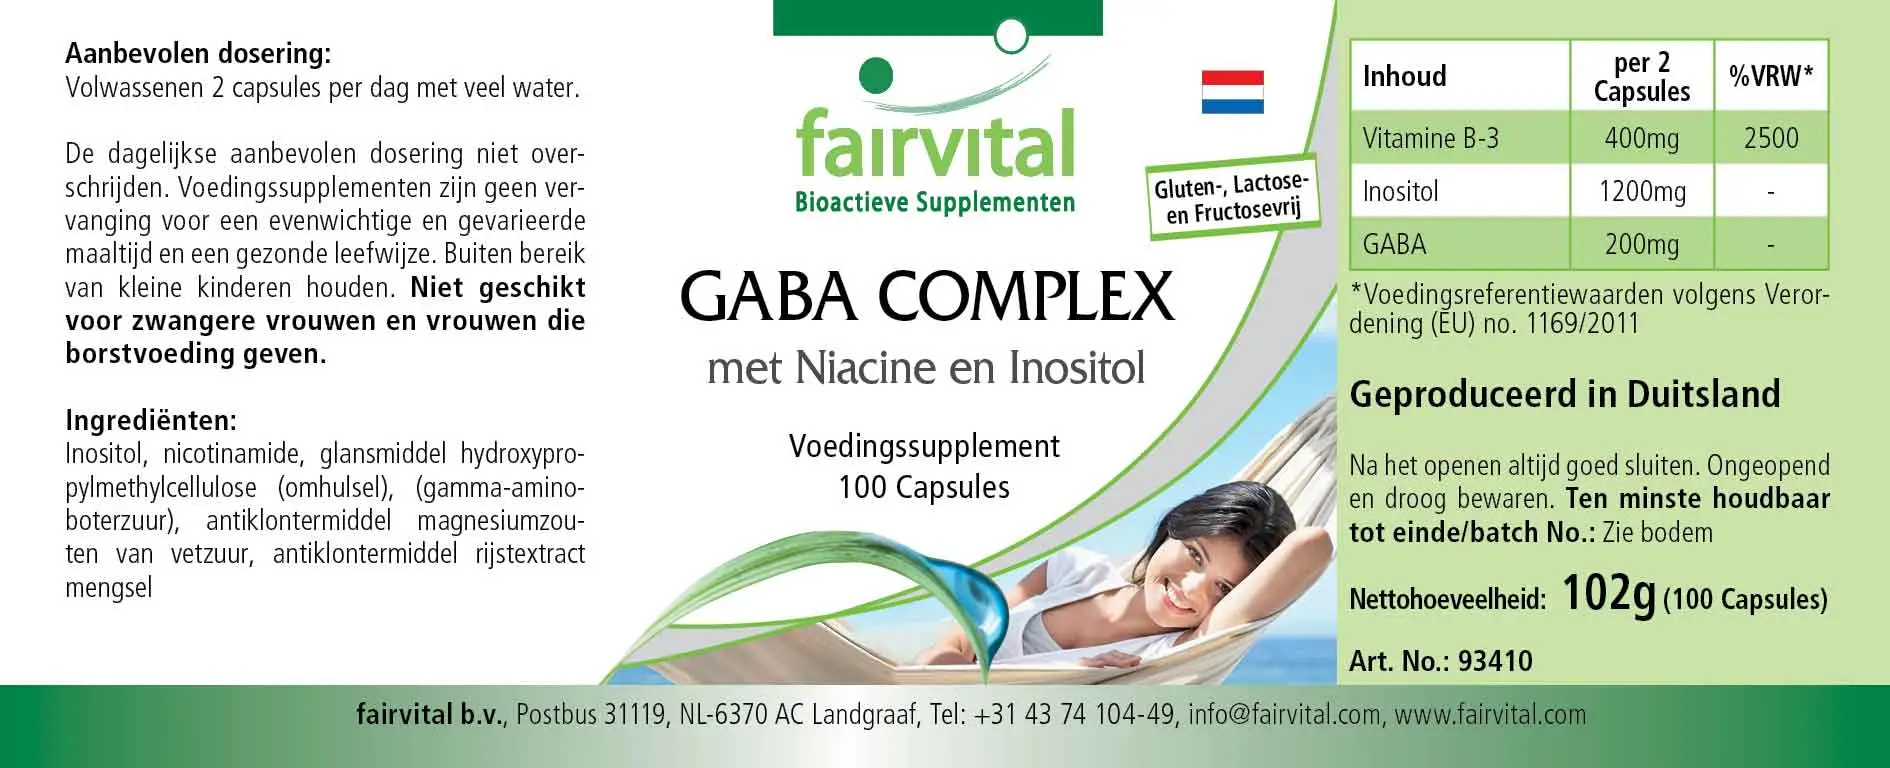 GABA COMPLEX con Niacina e Inositol - 100 Cápsulas